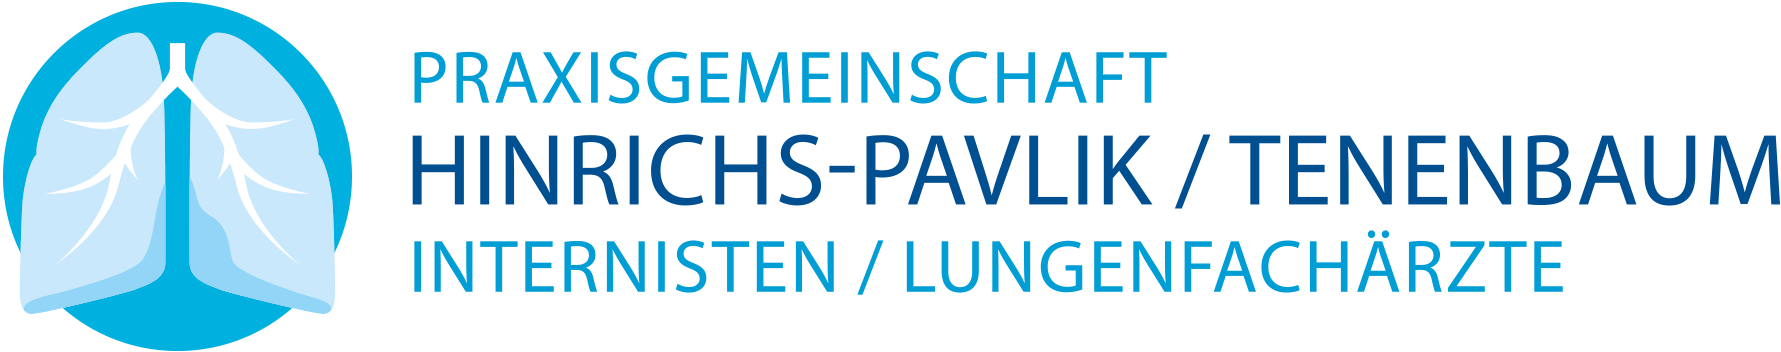 Praxisgemeinschaft Hinrichs-Pavlik / Tenenbaum